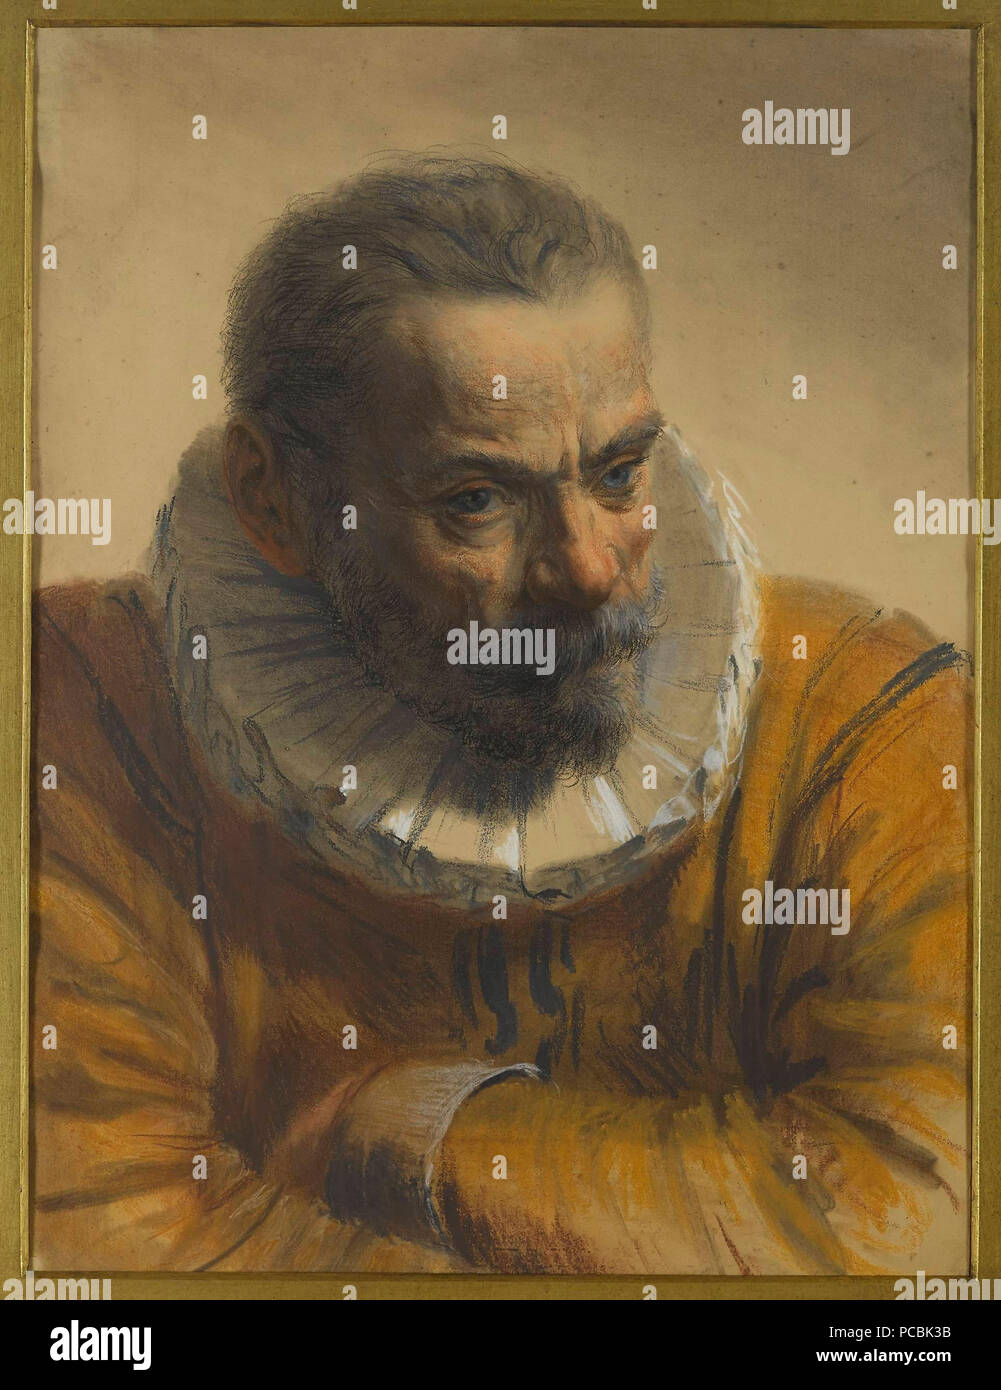 2 Adolph Menzel - Mężczyzna w renesansowym stroju Stock Photo